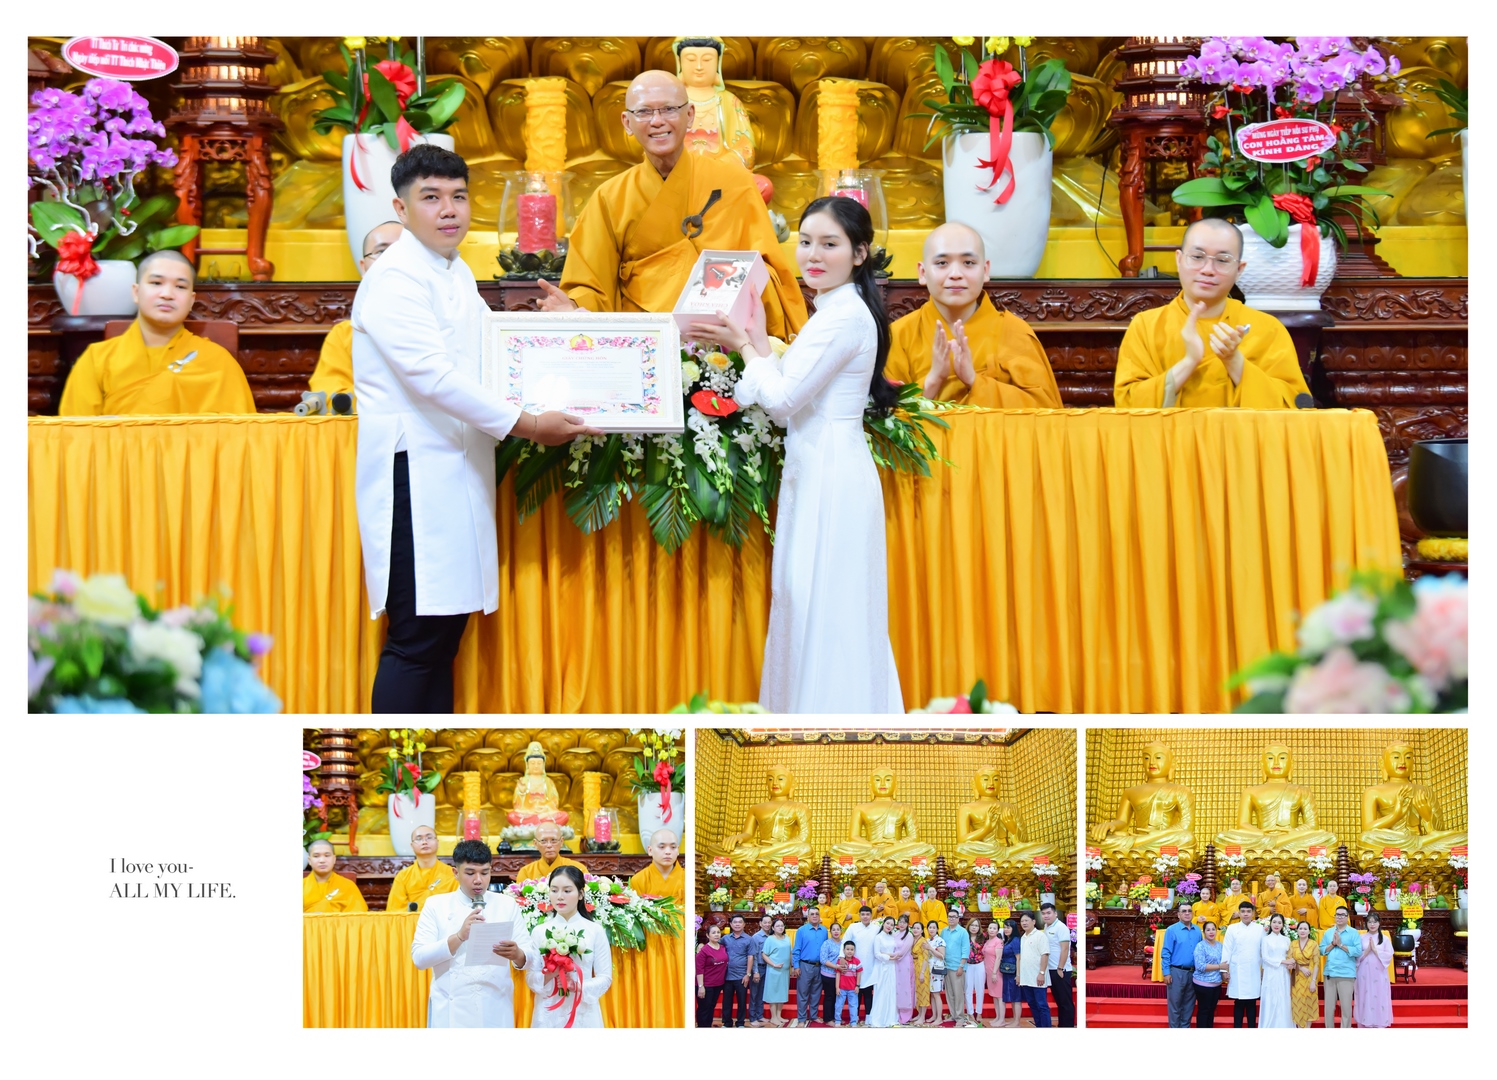 Thầy Bổn sư trao giấy chứng nhận cho đôi vợ chồng